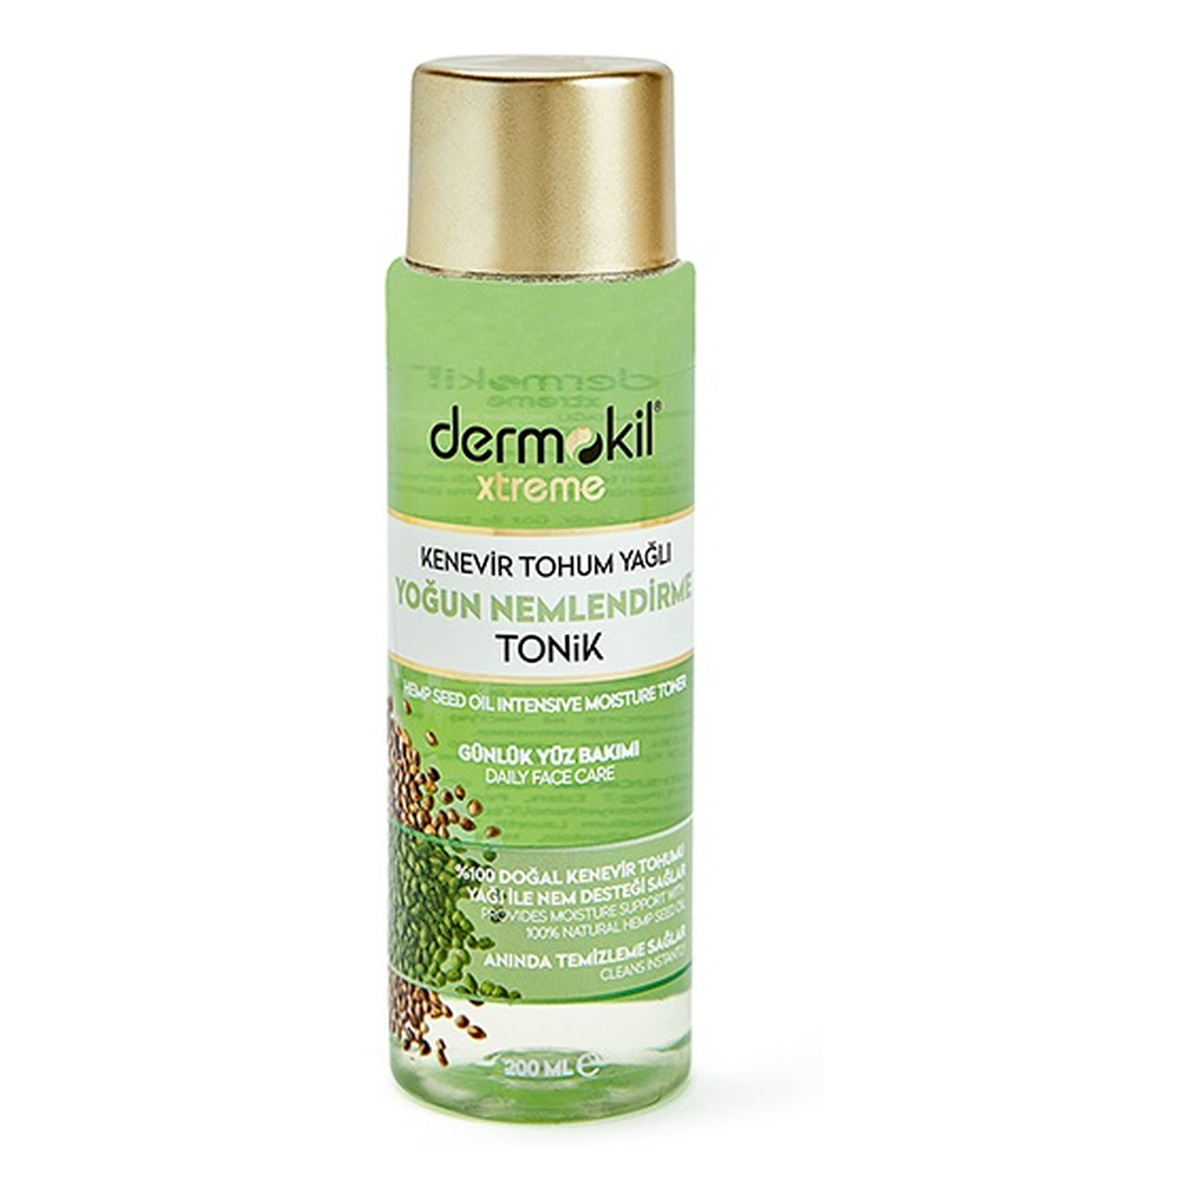 Dermokil Xtreme hemp seed oil intensive moisture toner intensywnie nawilżający tonik do twarzy 200ml